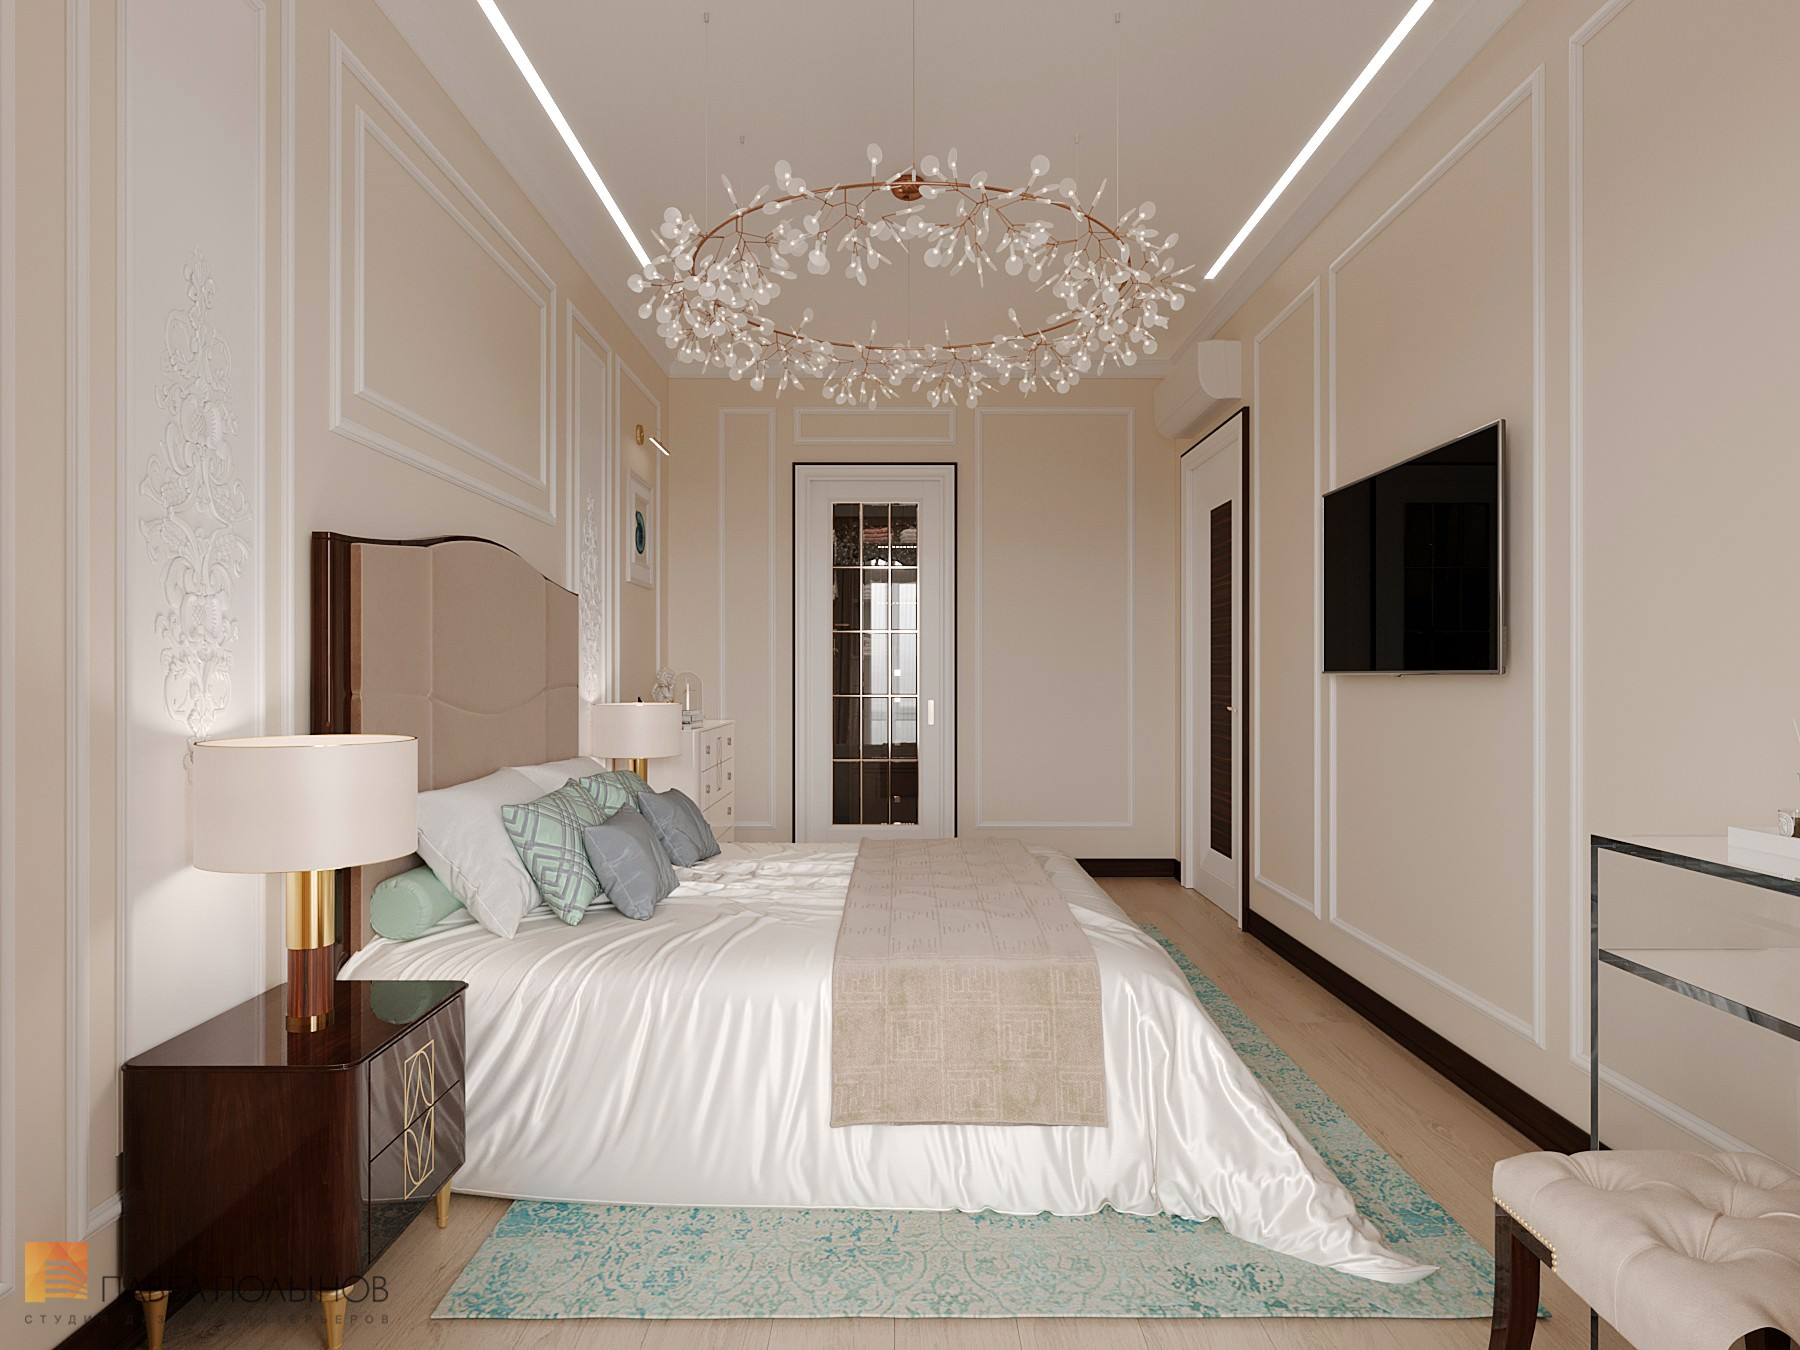 Фото дизайн спальни из проекта «Интерьер квартиры в стиле неоклассики с элементами ар-деко, ЖК «Rich Art Club», 75 кв.м.»